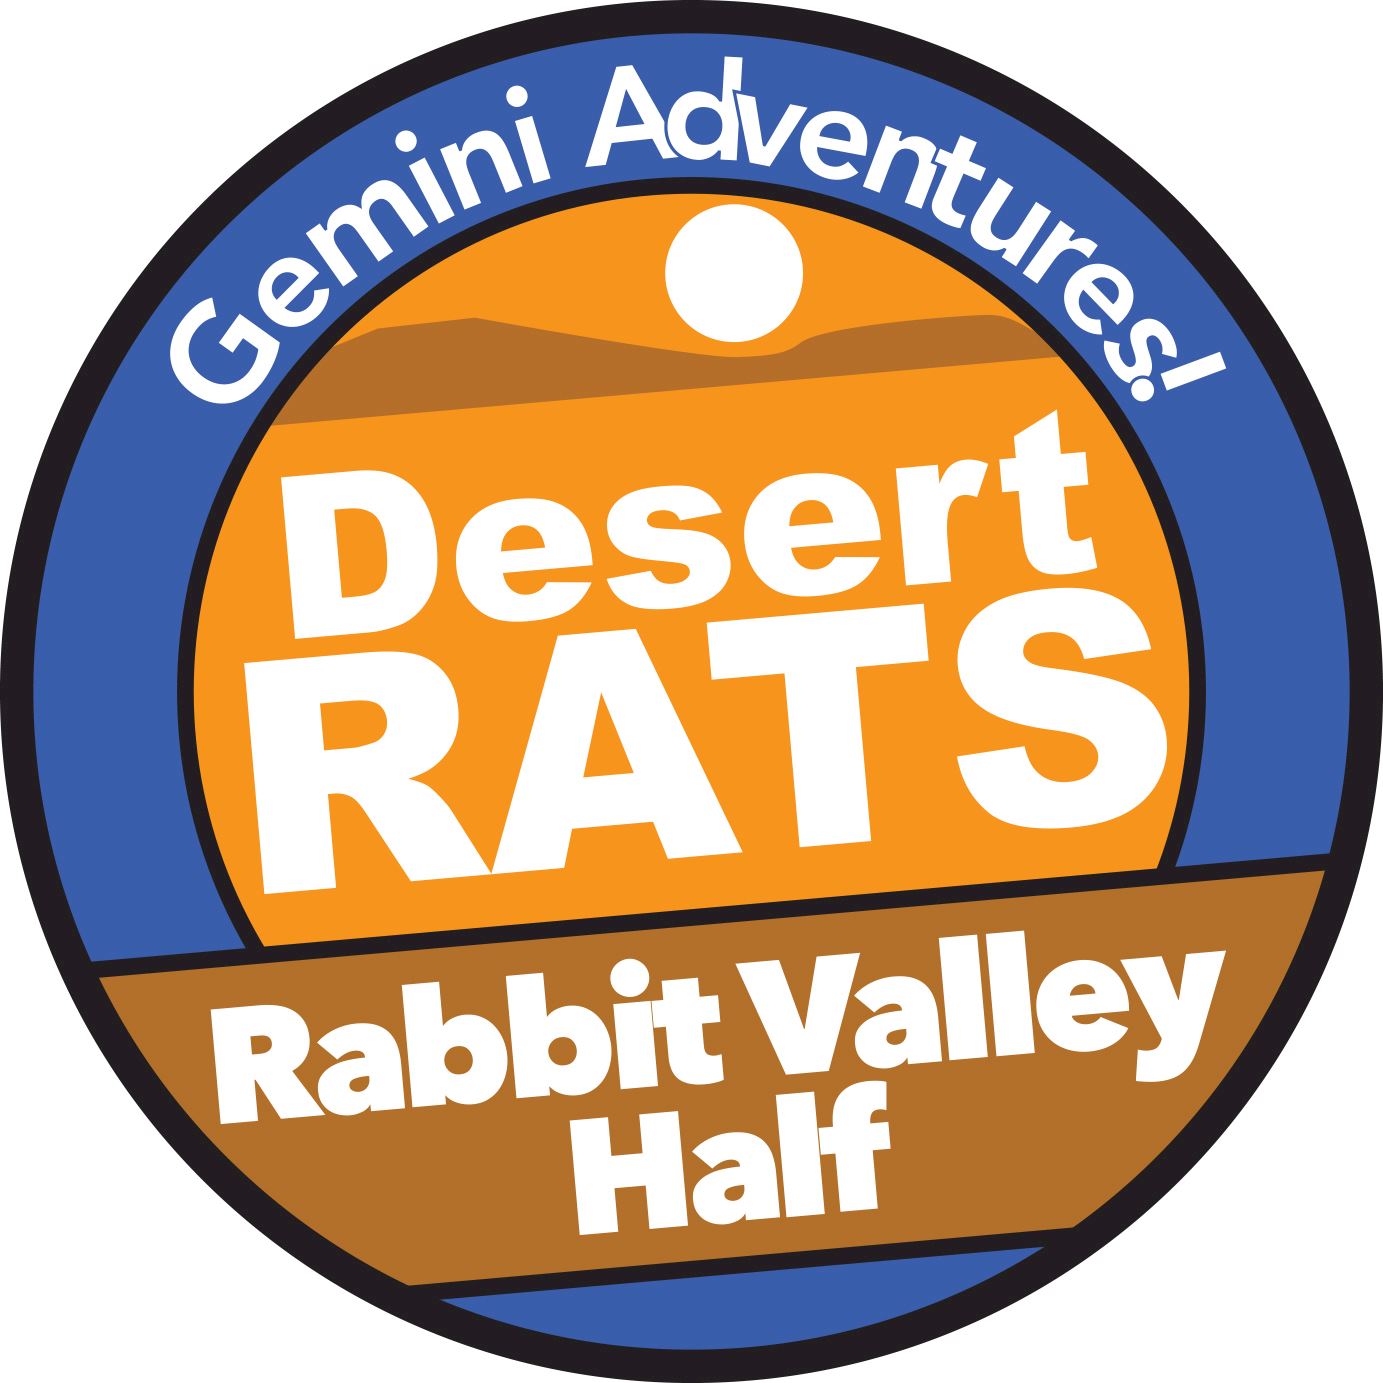 rabbit valley half marathon